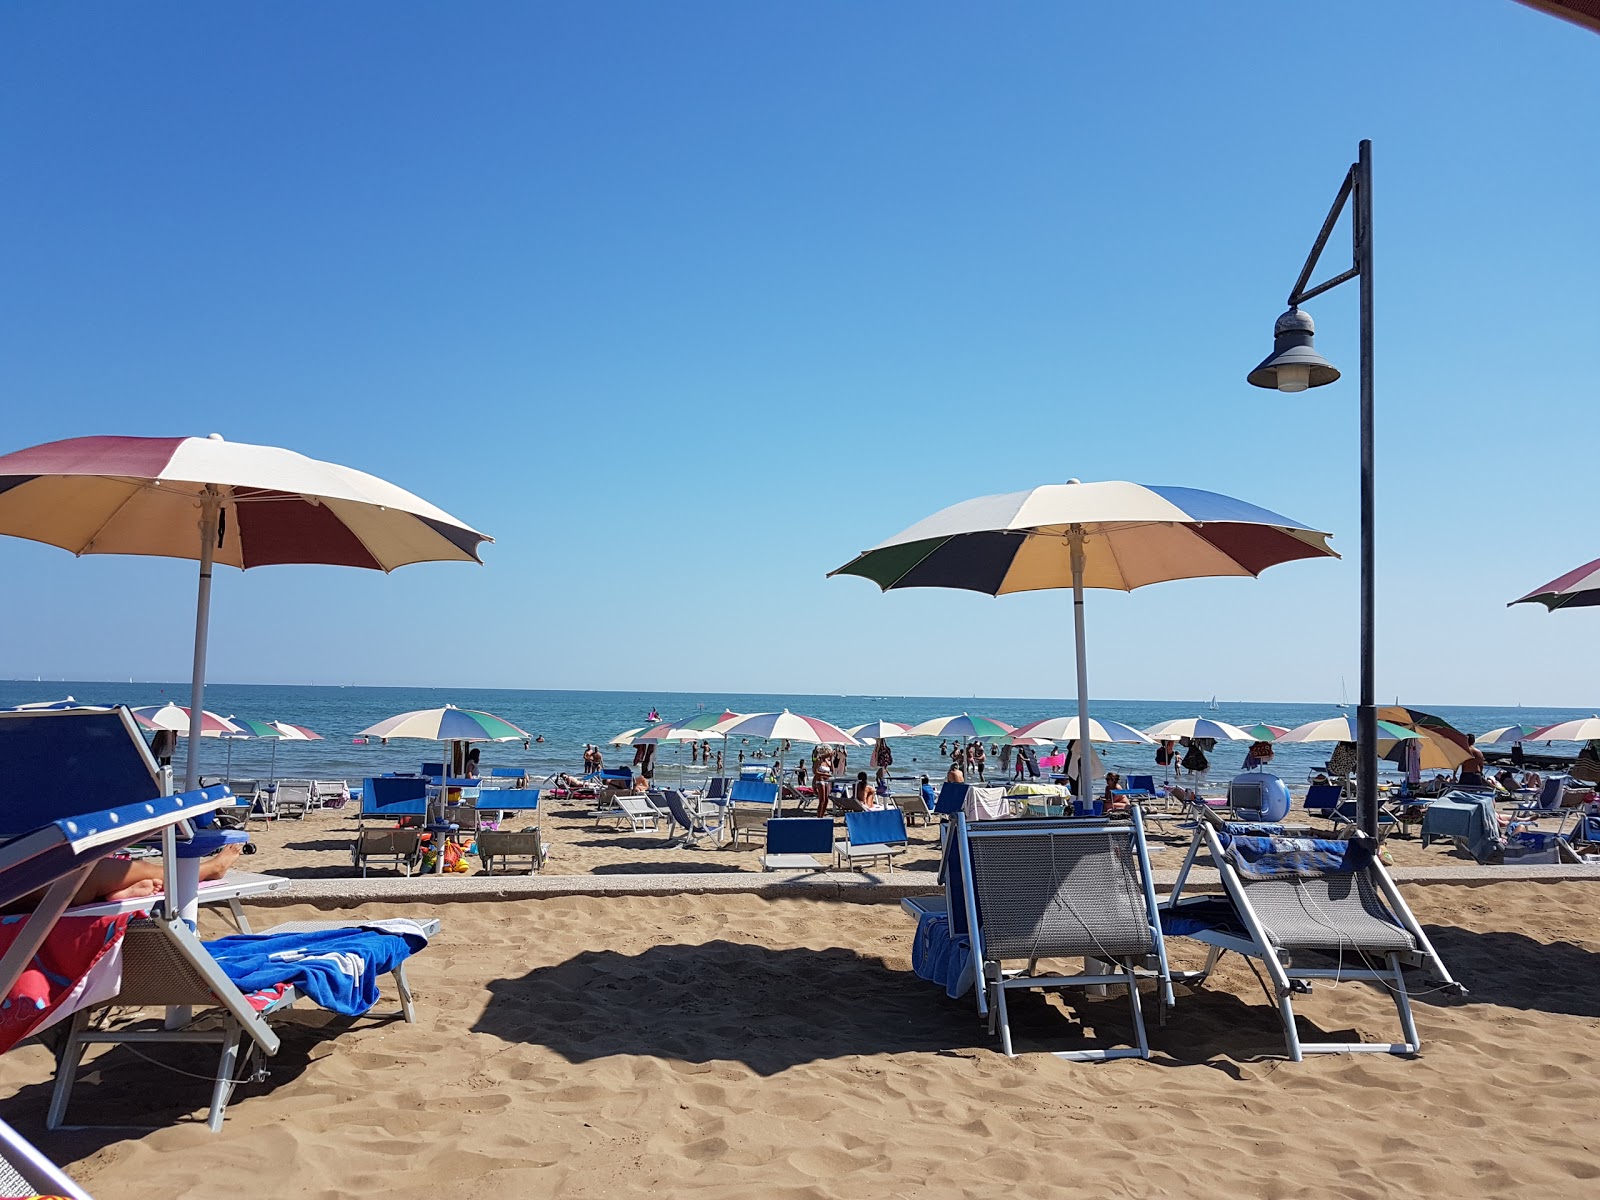 Foto af Spiaggia Libera Caorle med turkis rent vand overflade